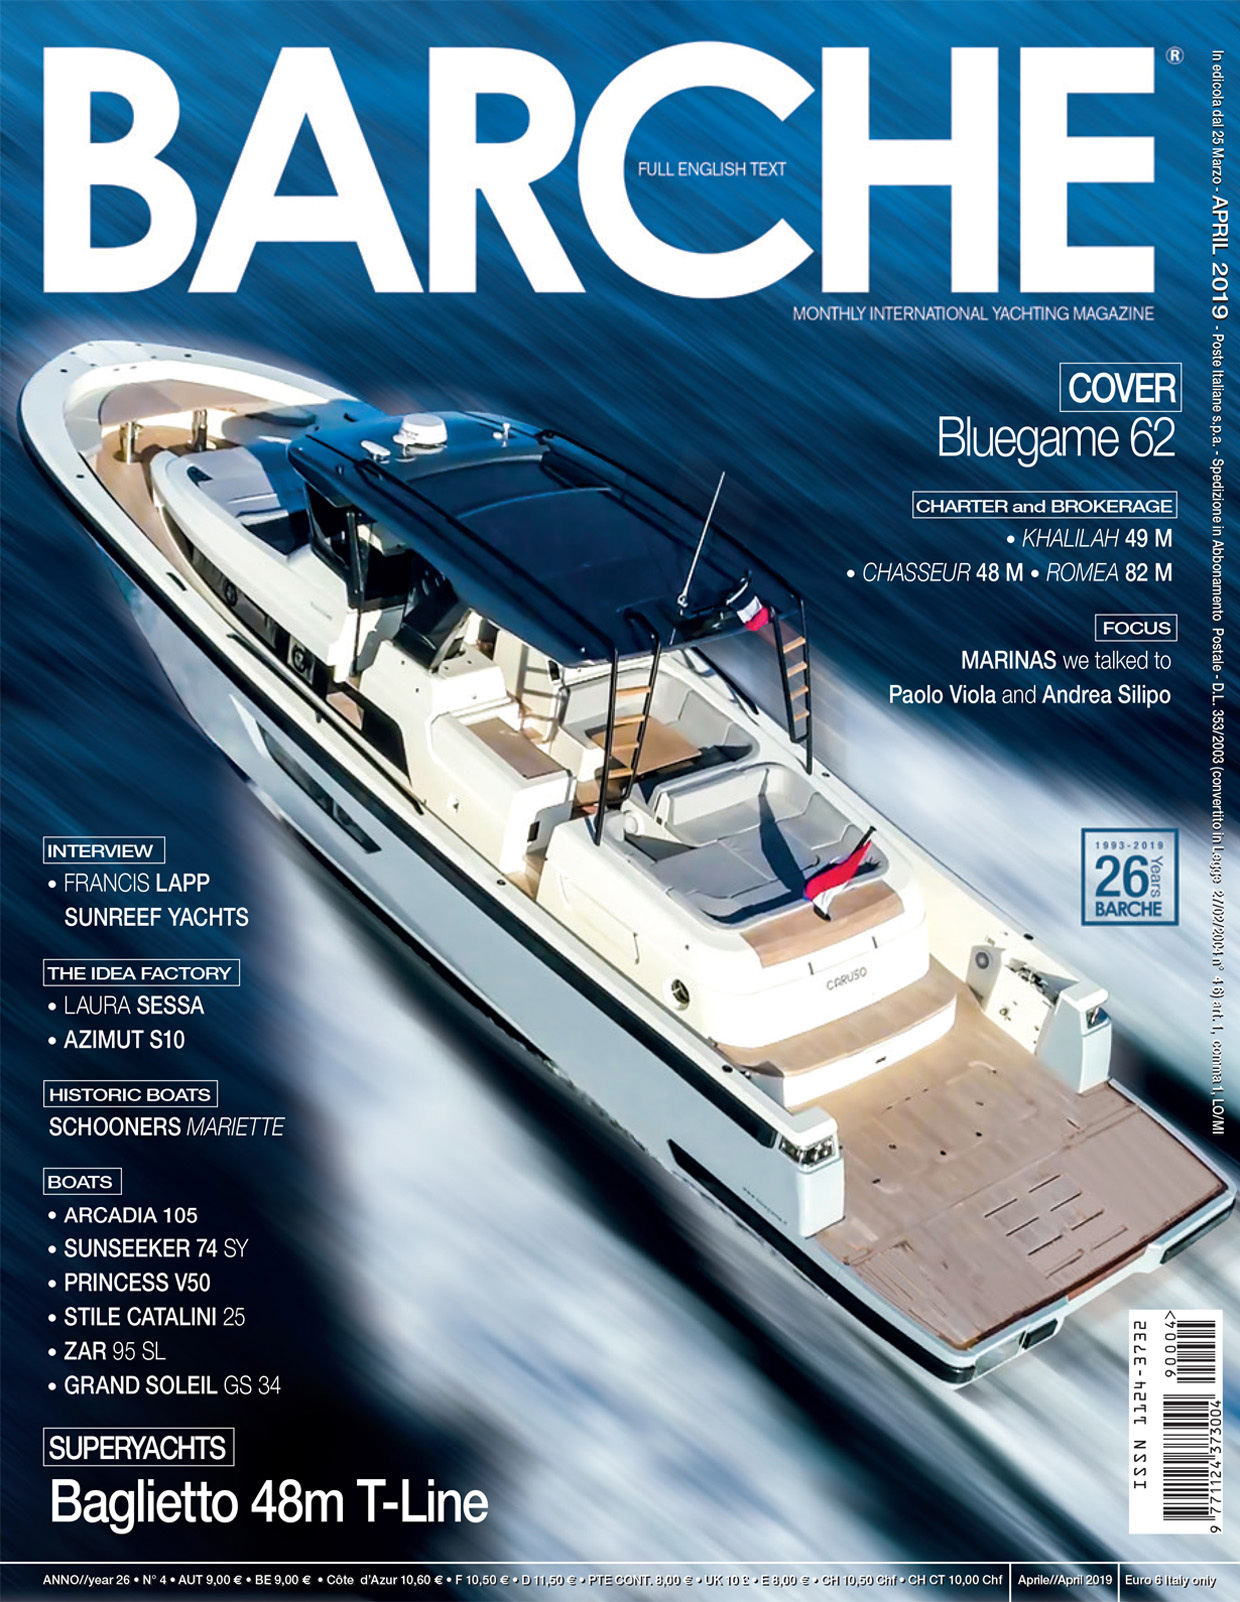 Barche, April 2019